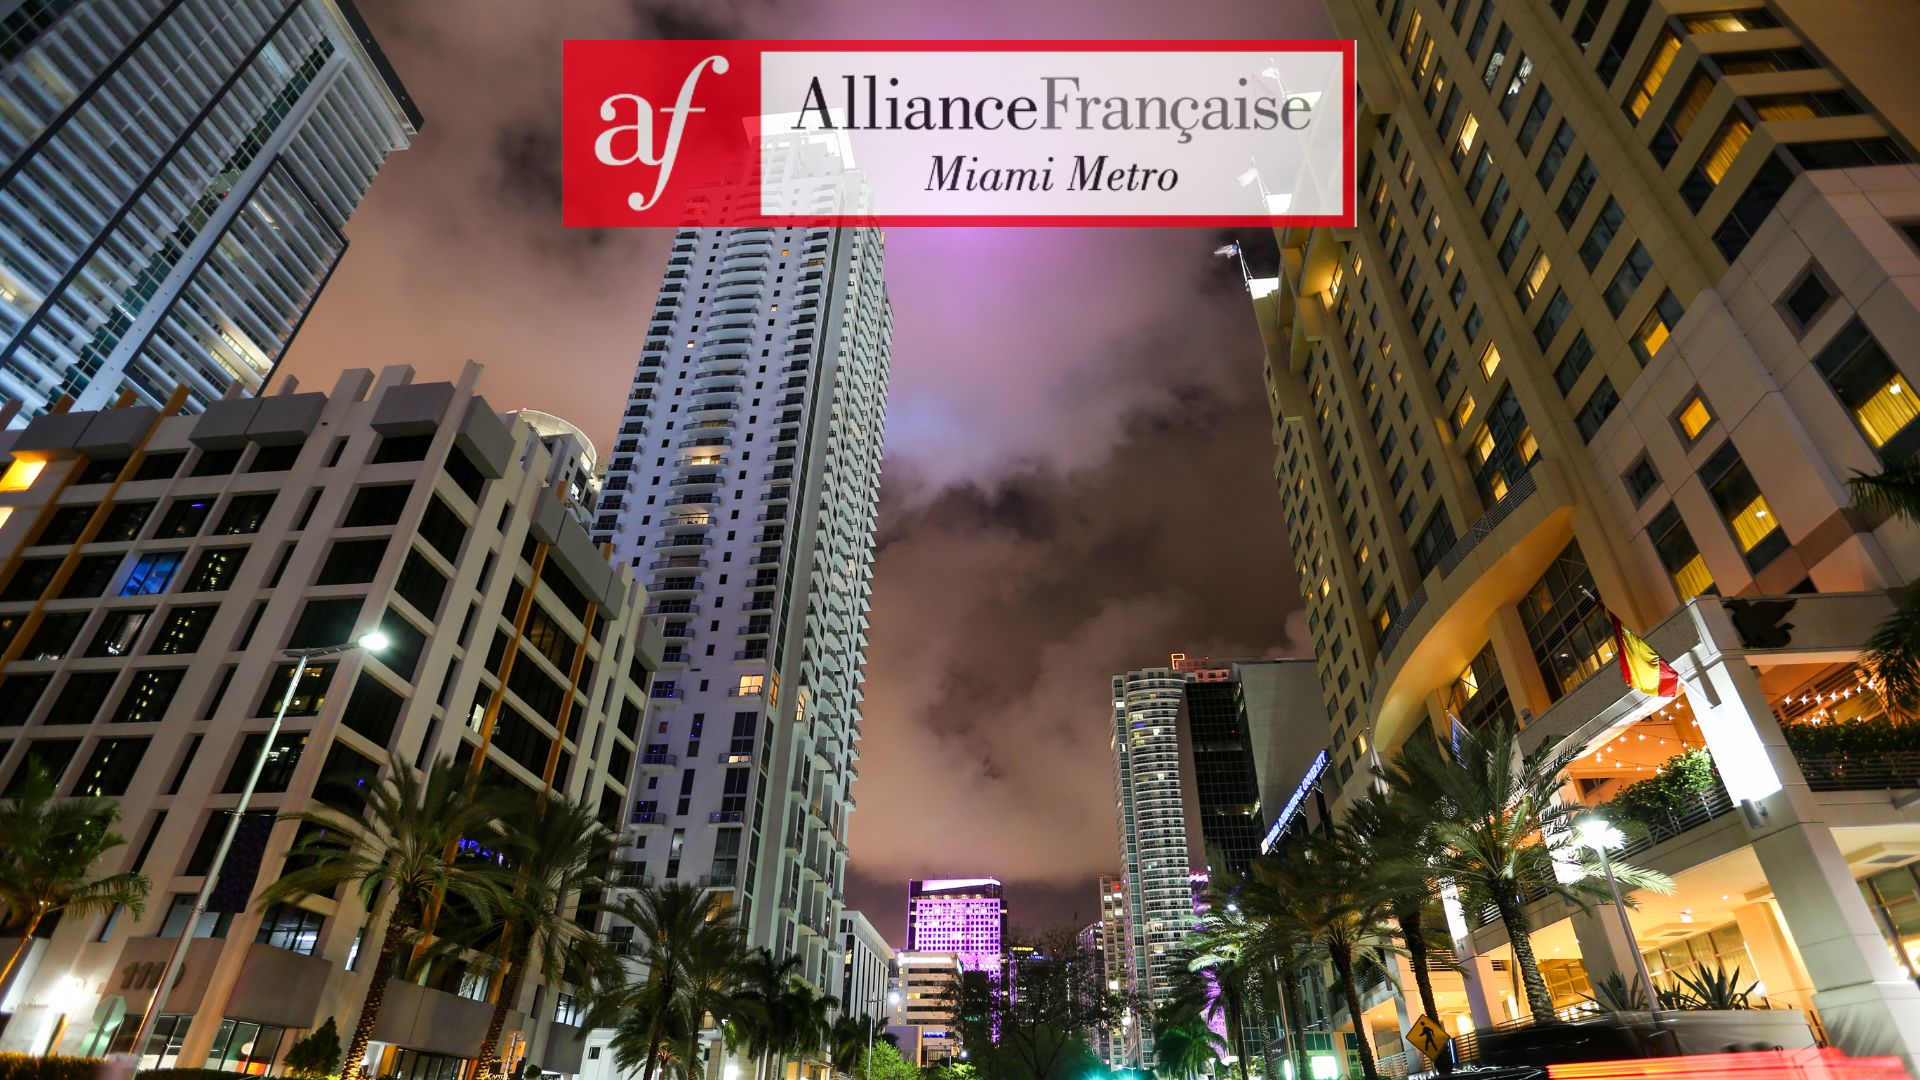 Des locaux pour l’Alliance Française “Miami Metro“